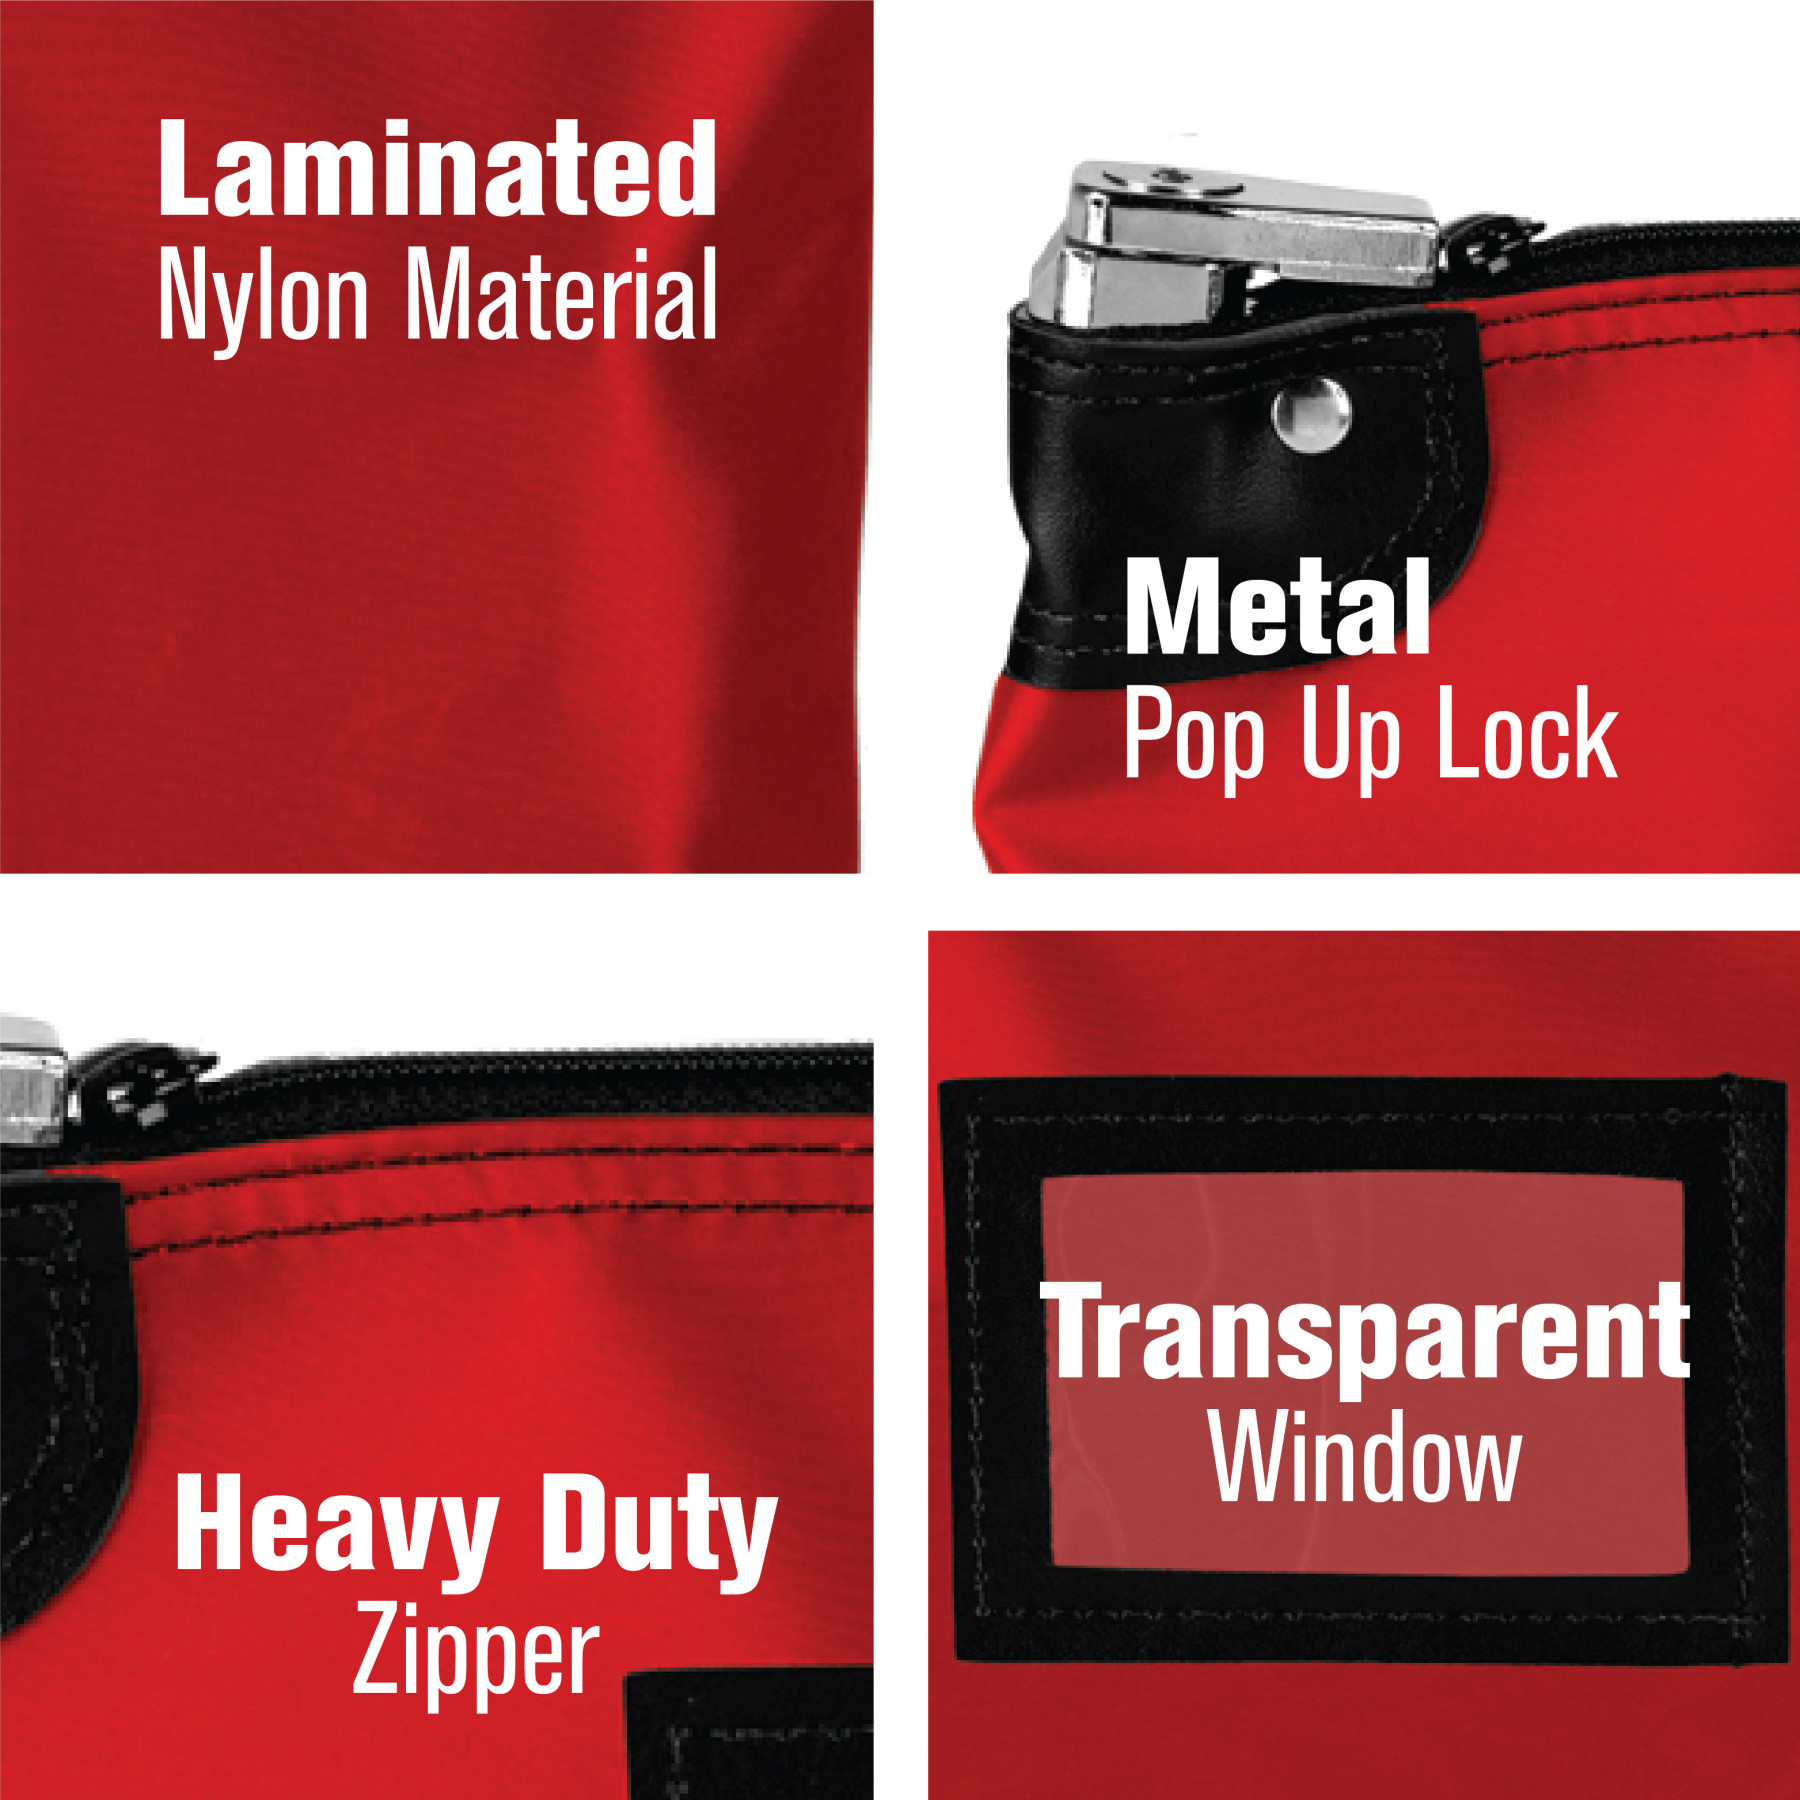 Laminated Nylon Locking Deposit Bag - 15W x 11H details